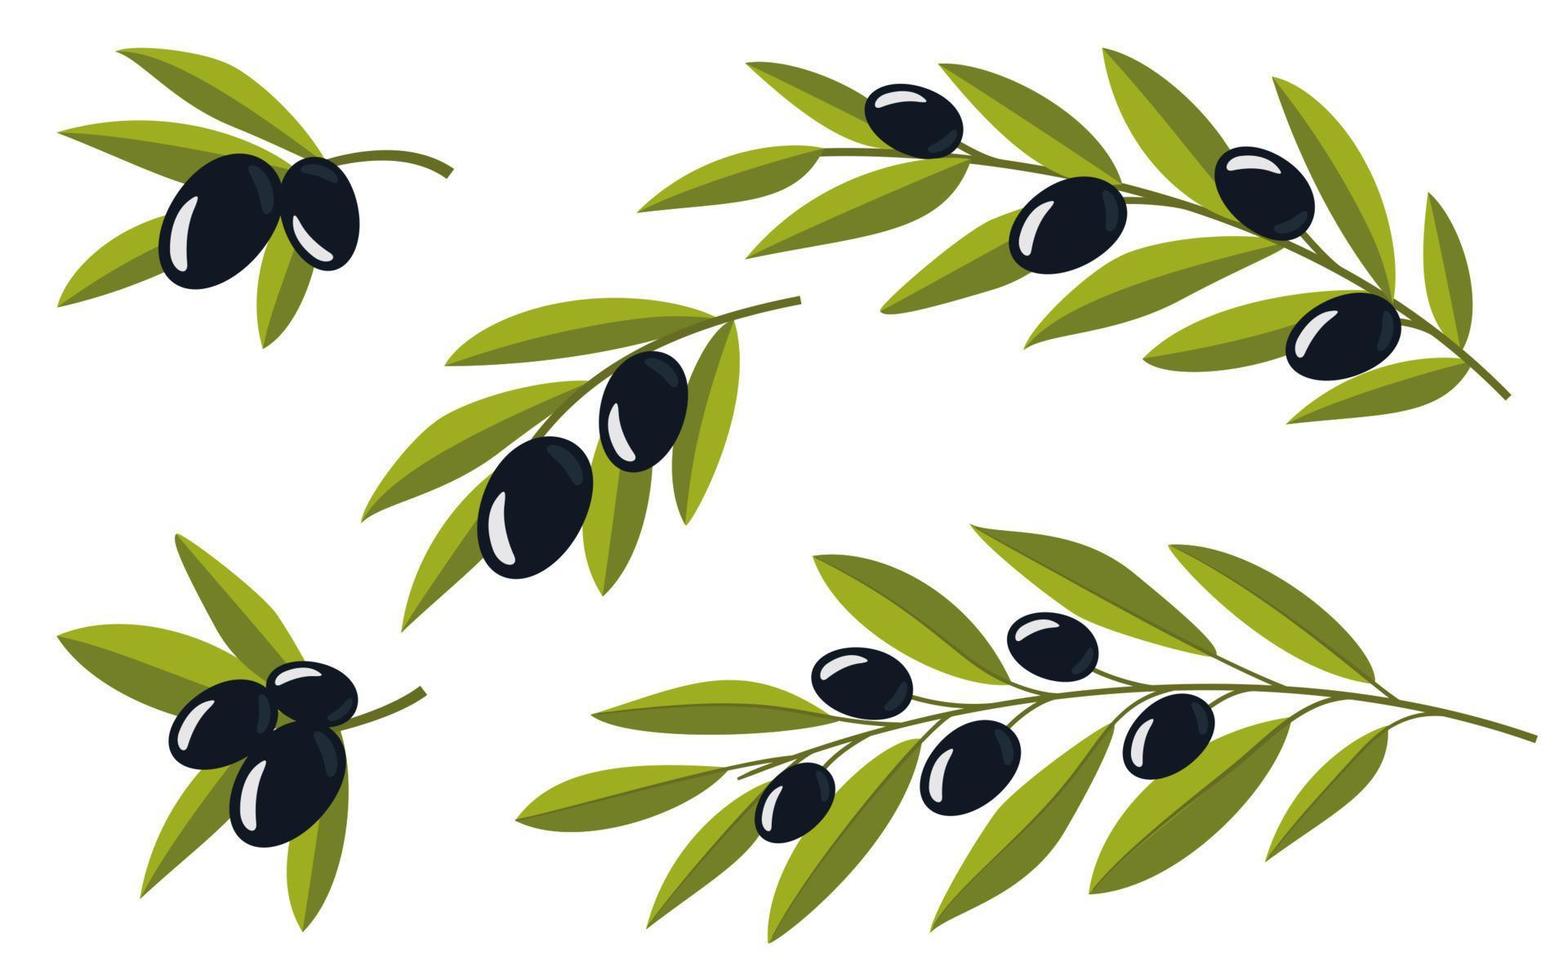 reeks van olijven. olijf- takken. zwart takken van olijven voor ontwerp van natuurlijk cosmetica, olijf- olie, geneesmiddel. organische stoffen voor een gezond levensstijl. vector illustratie.